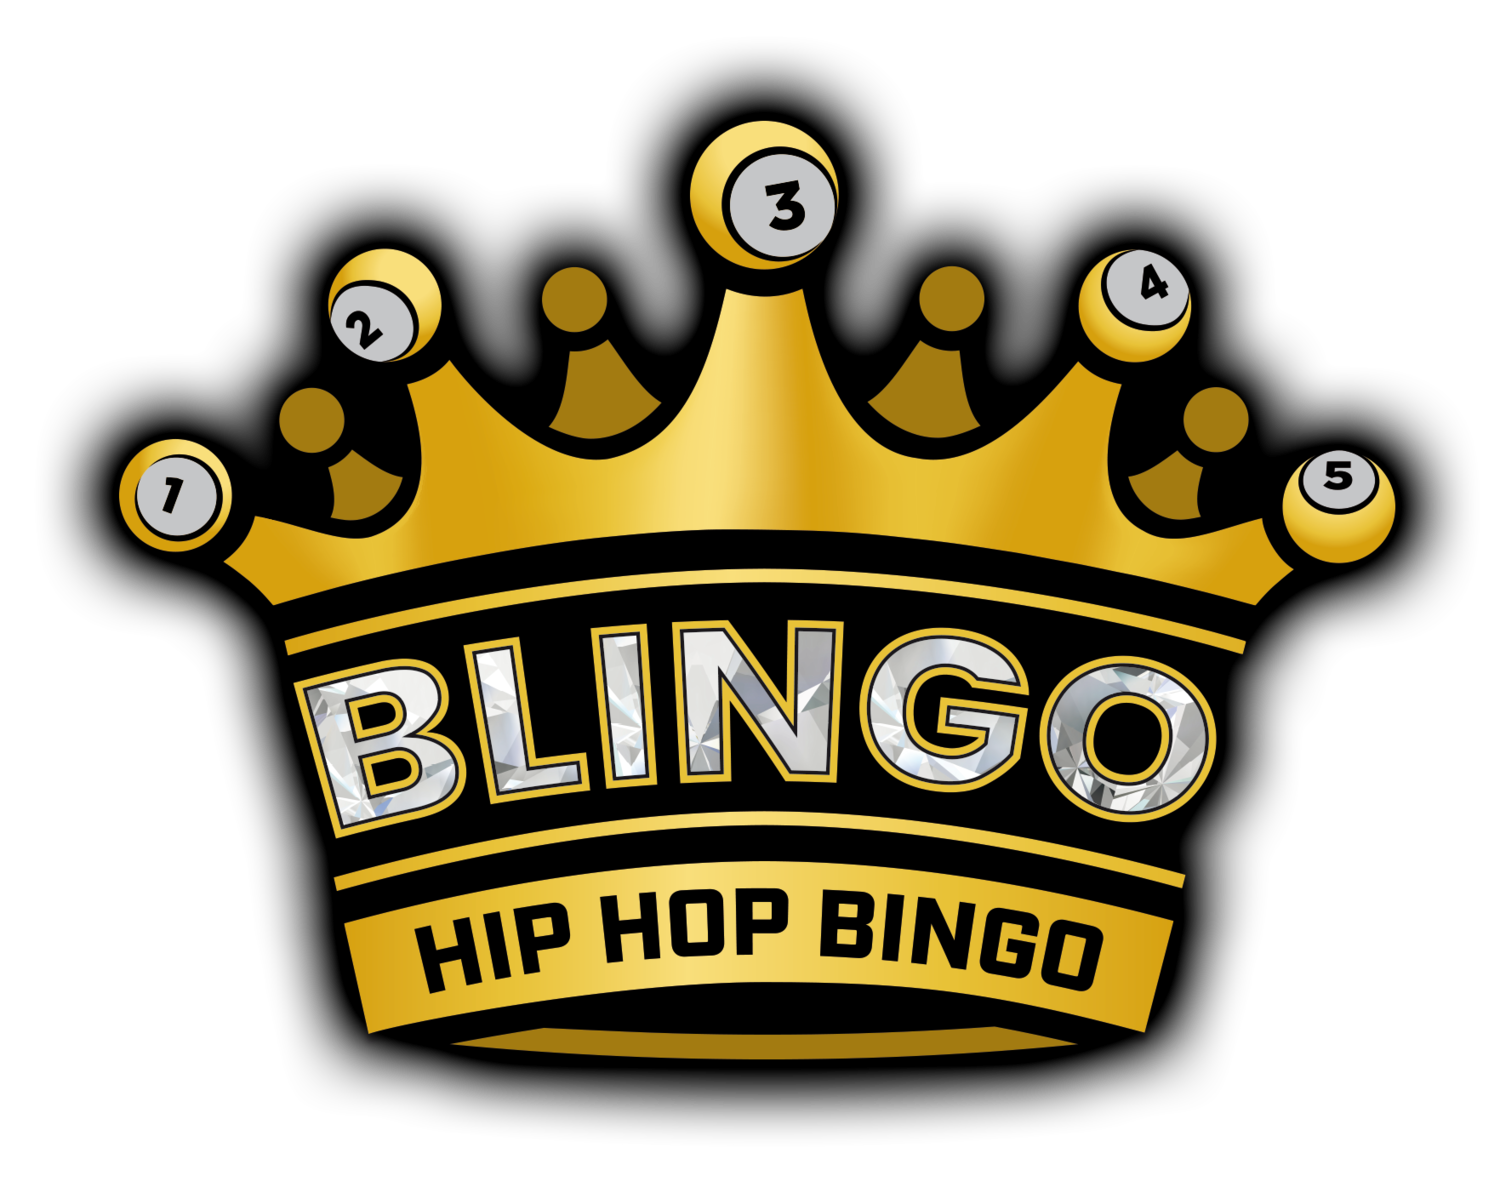 Blingo Bingo - Hip Hop Bingo